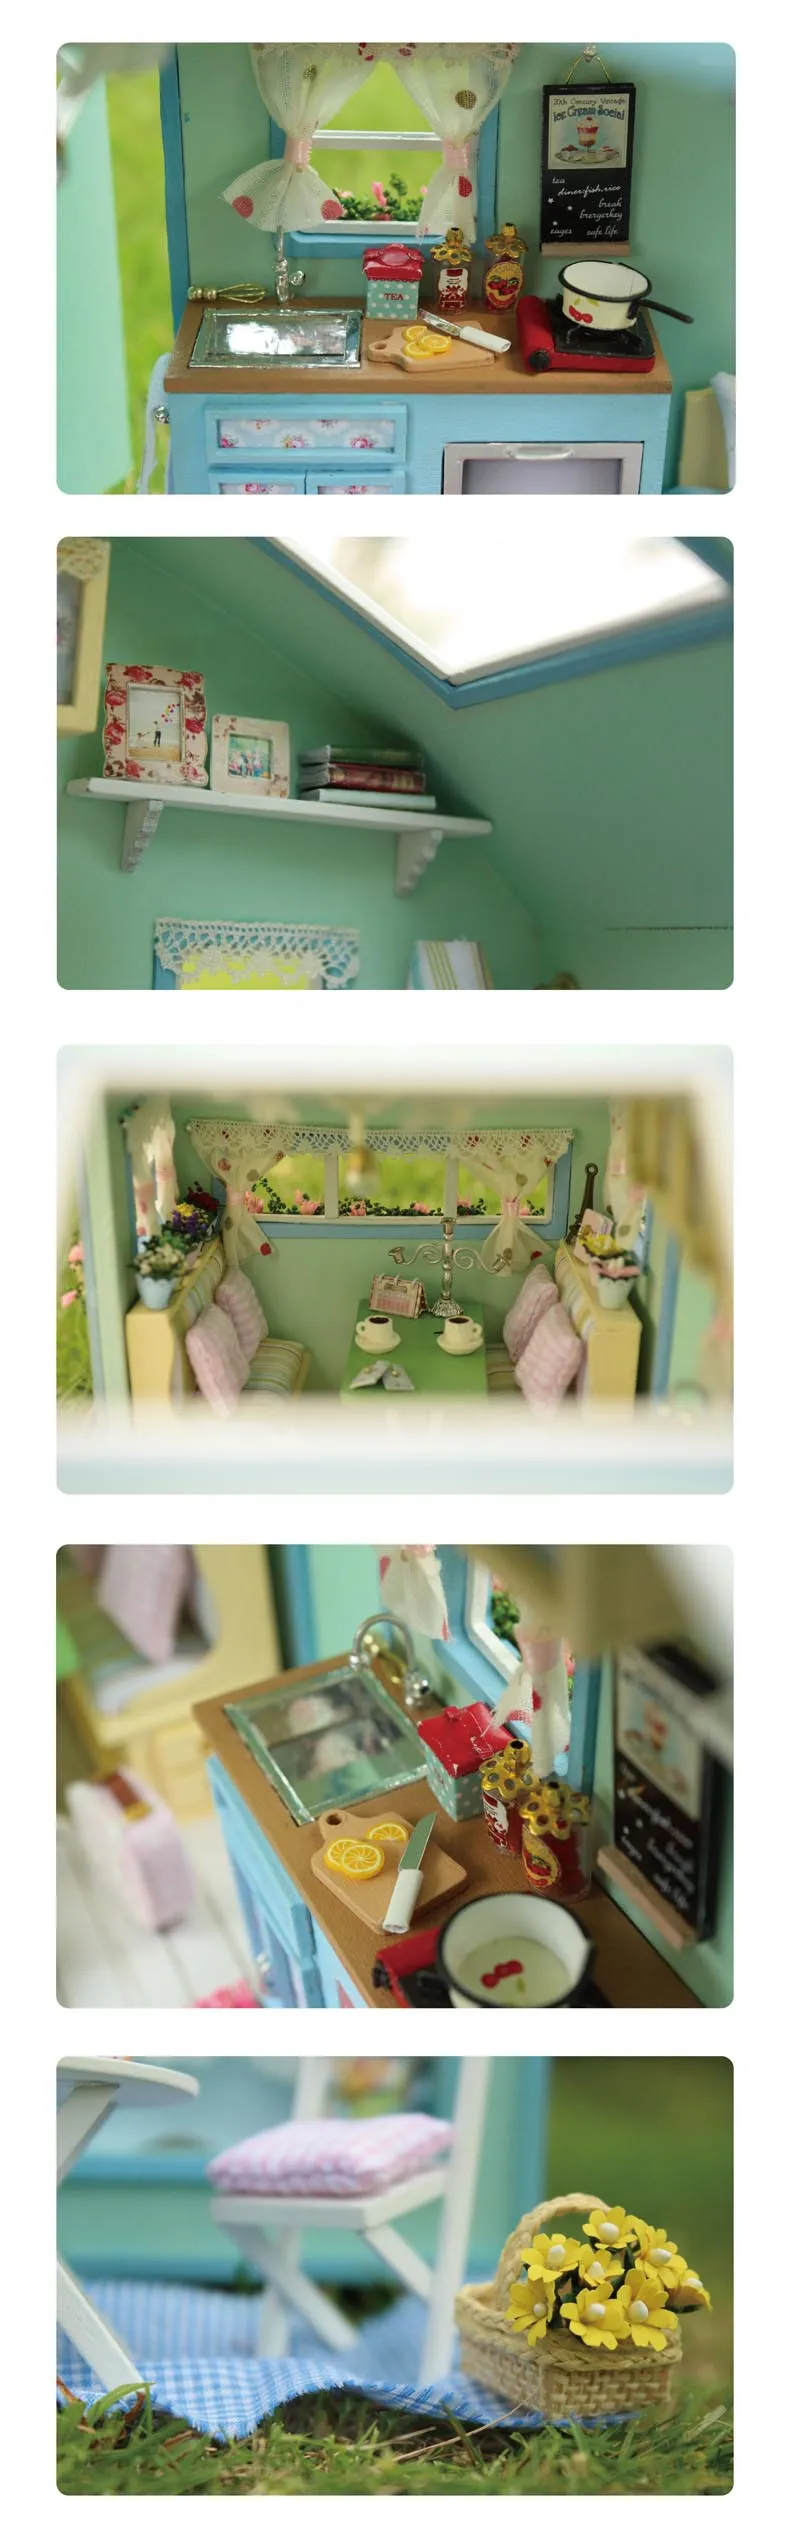 DIY деревянный кукольный дом кукольные домики миниатюрная кукольная мебель набор игрушек для детей подарок время путешествия A-016